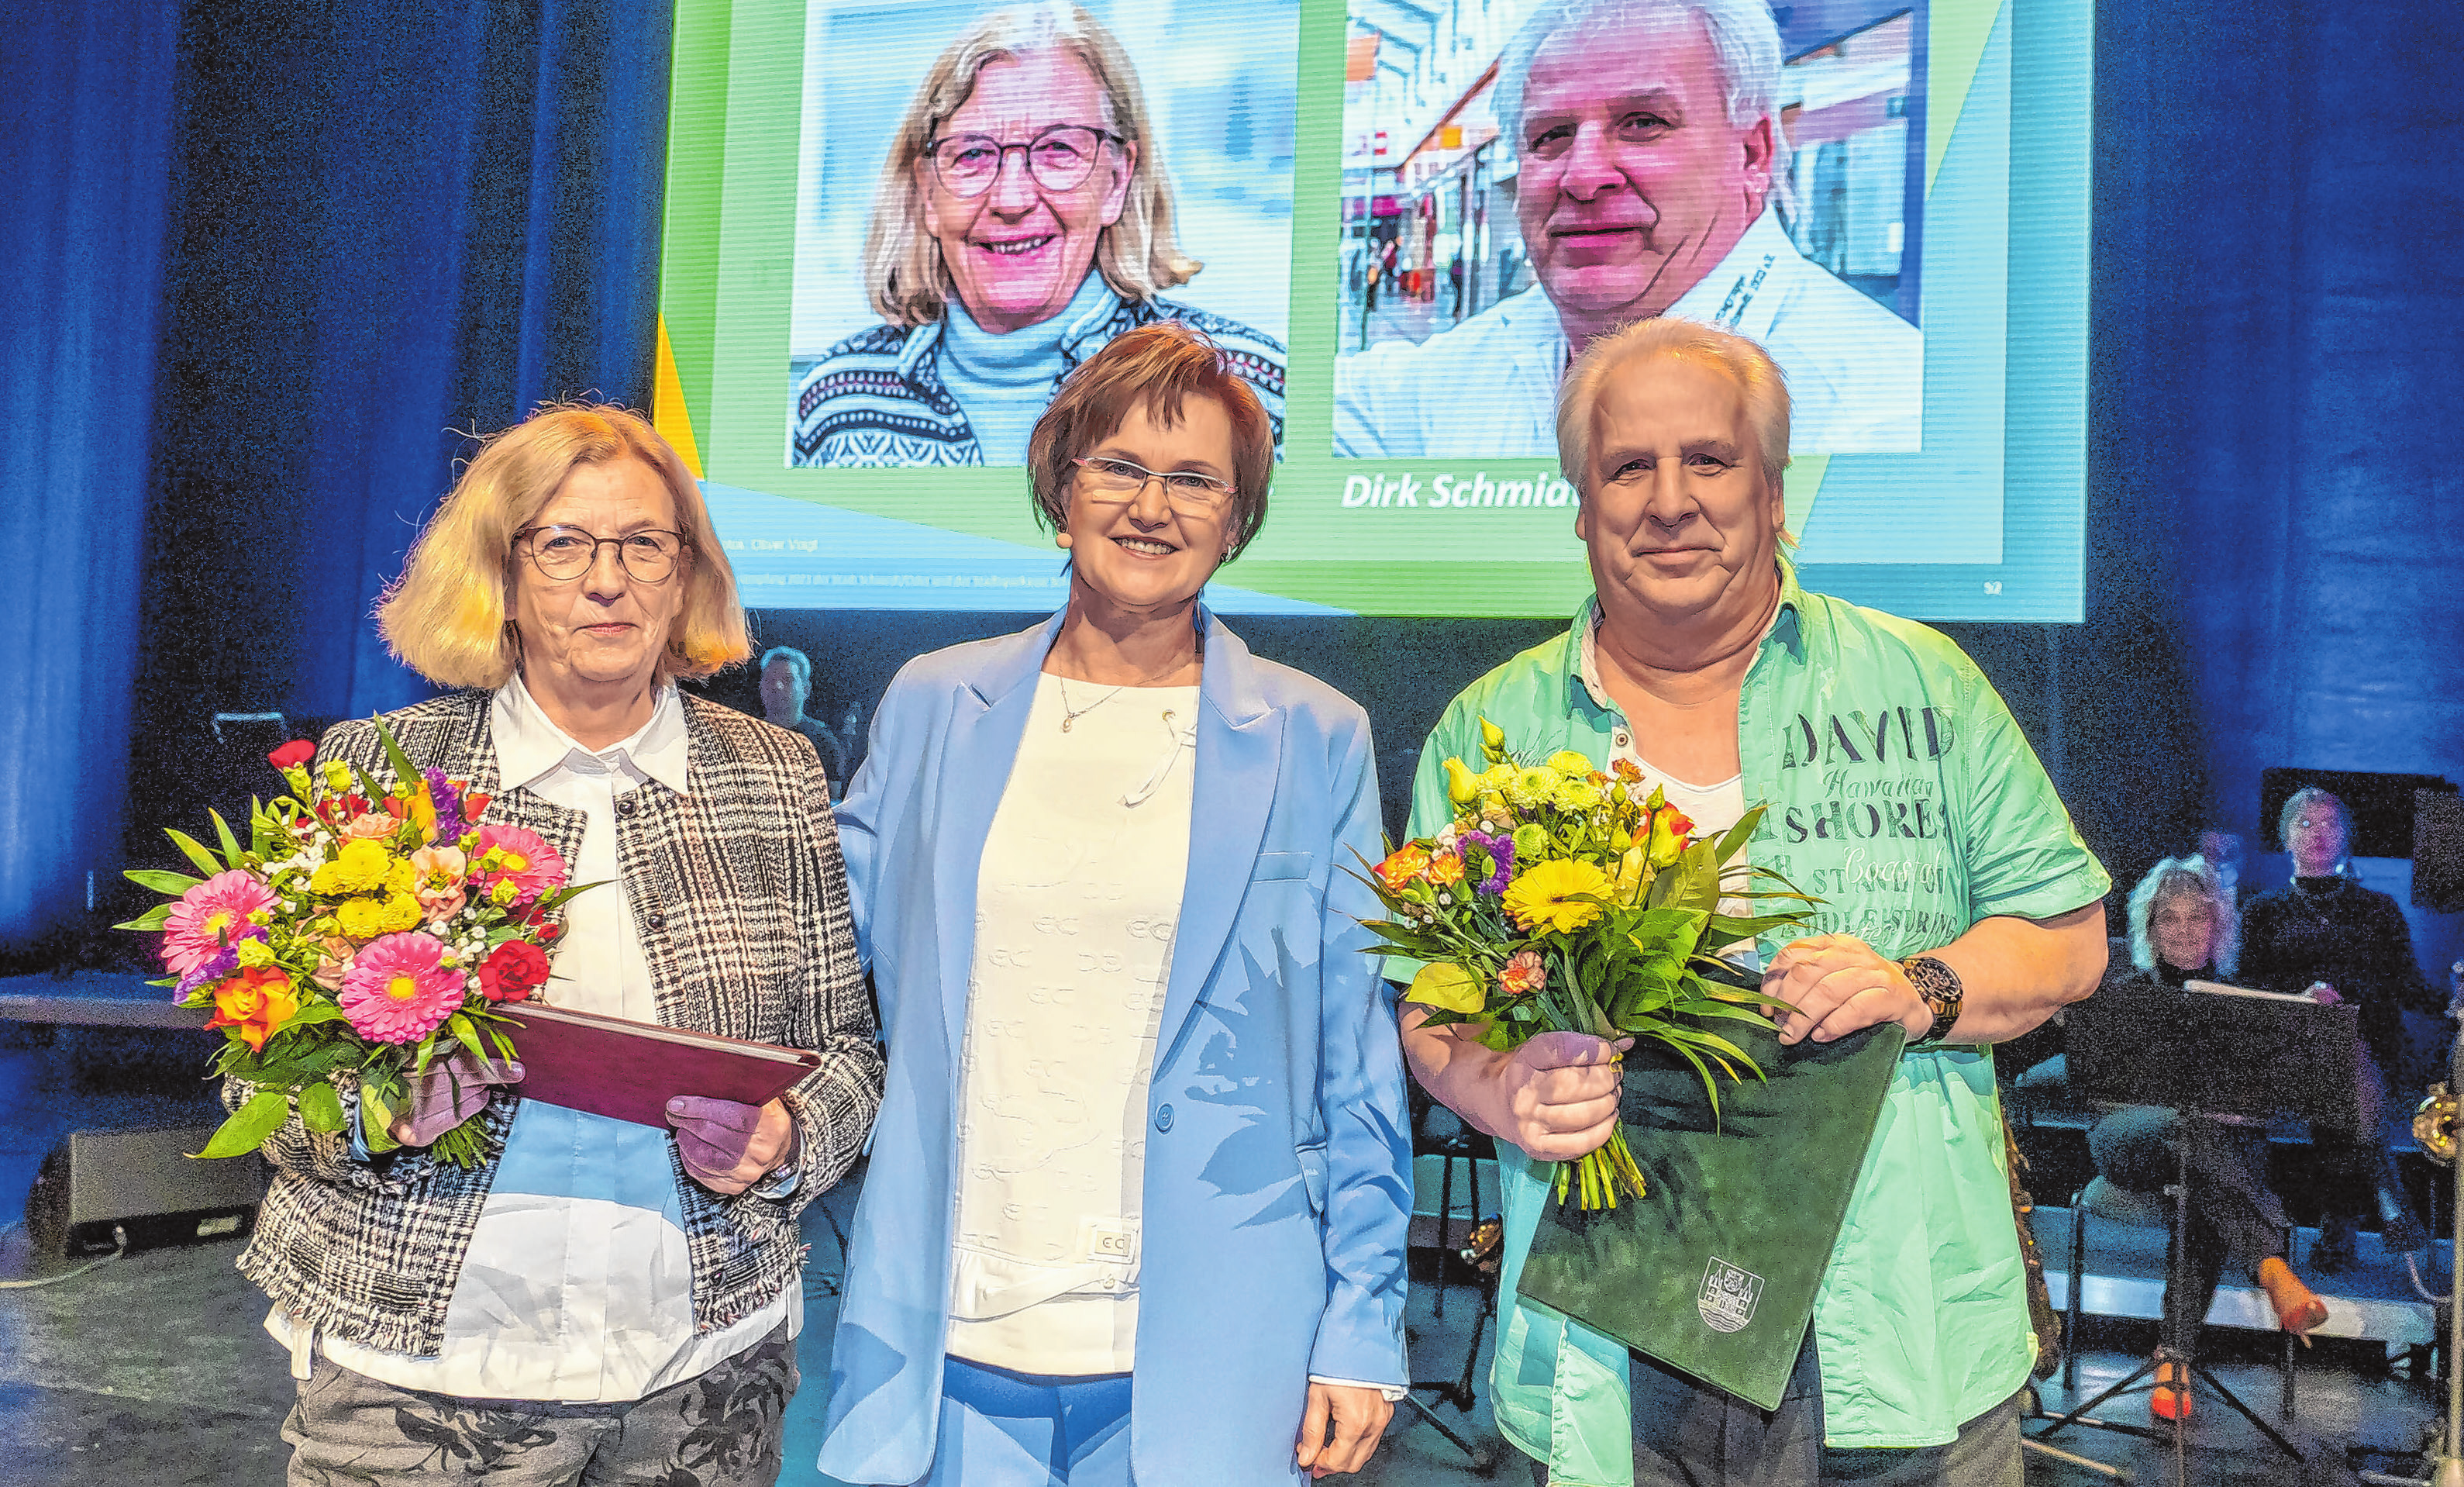 Ehrenpreisträger 2023: Gudrun Eger und Dirk Schmidt wurden von der Bürgermeisterin ausgezeichnet.